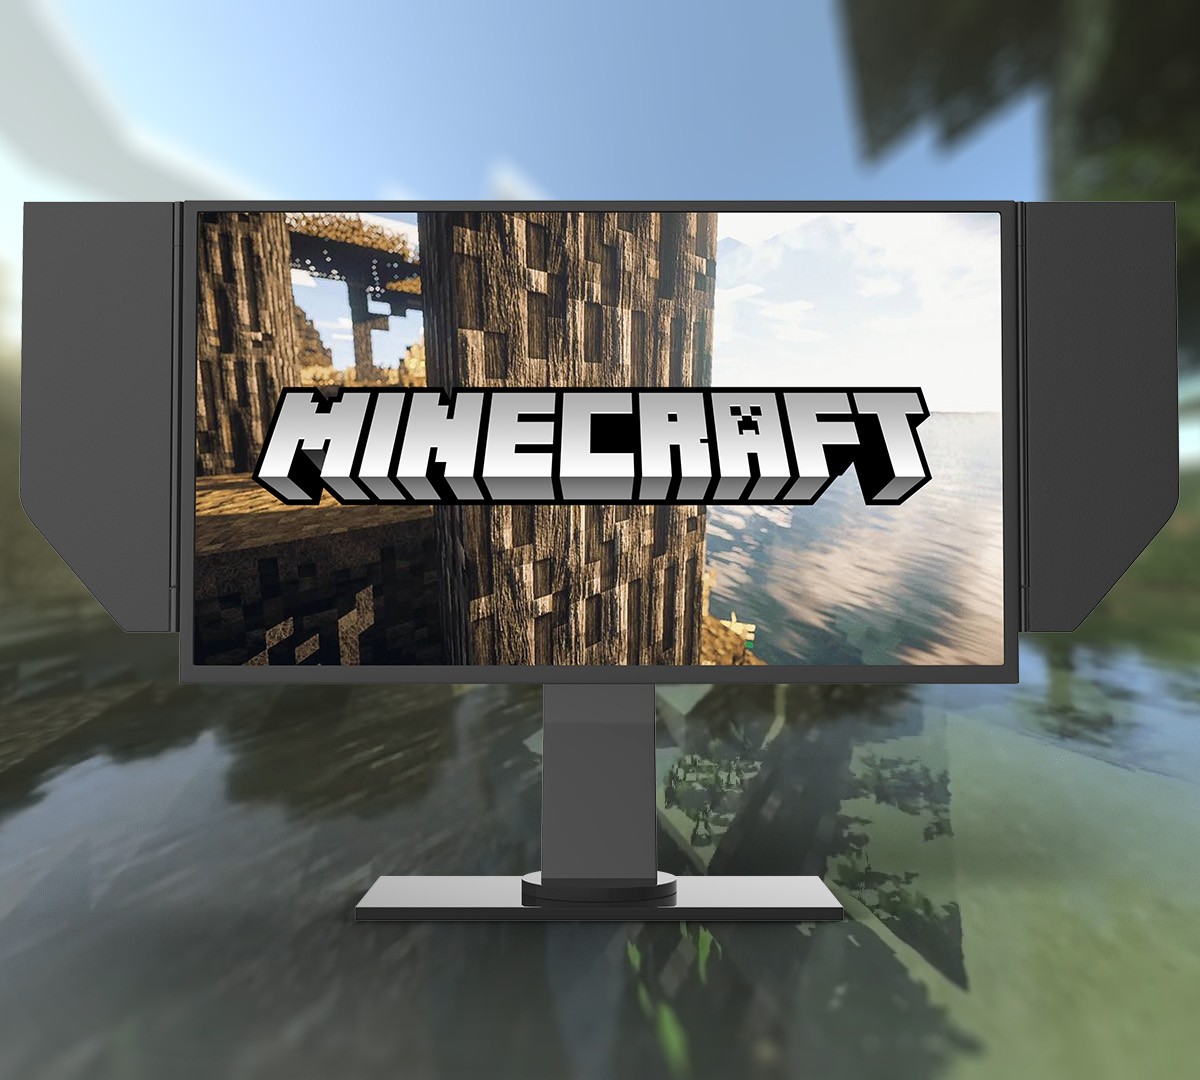 Minecraft: confira os principais mods com melhorias nos gráficos